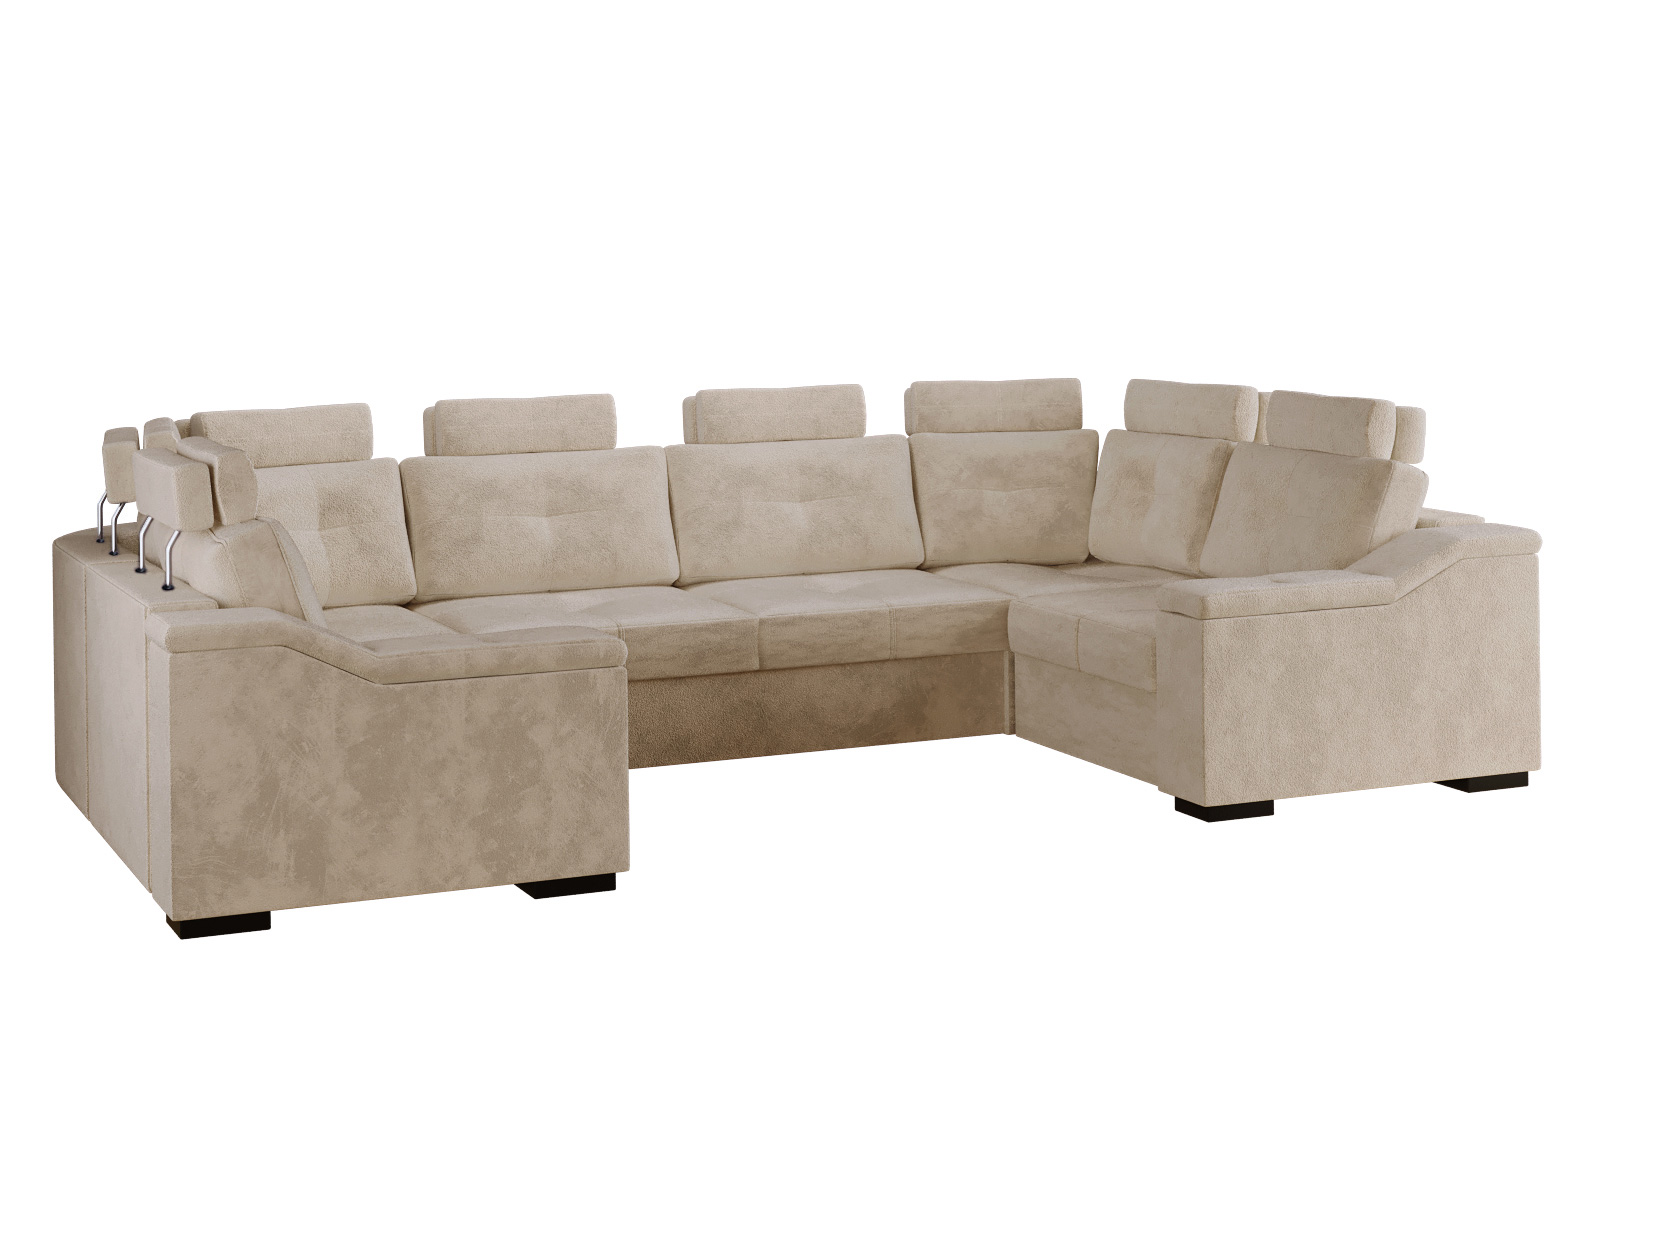 П-образный диван с креслами Триумф фото 9